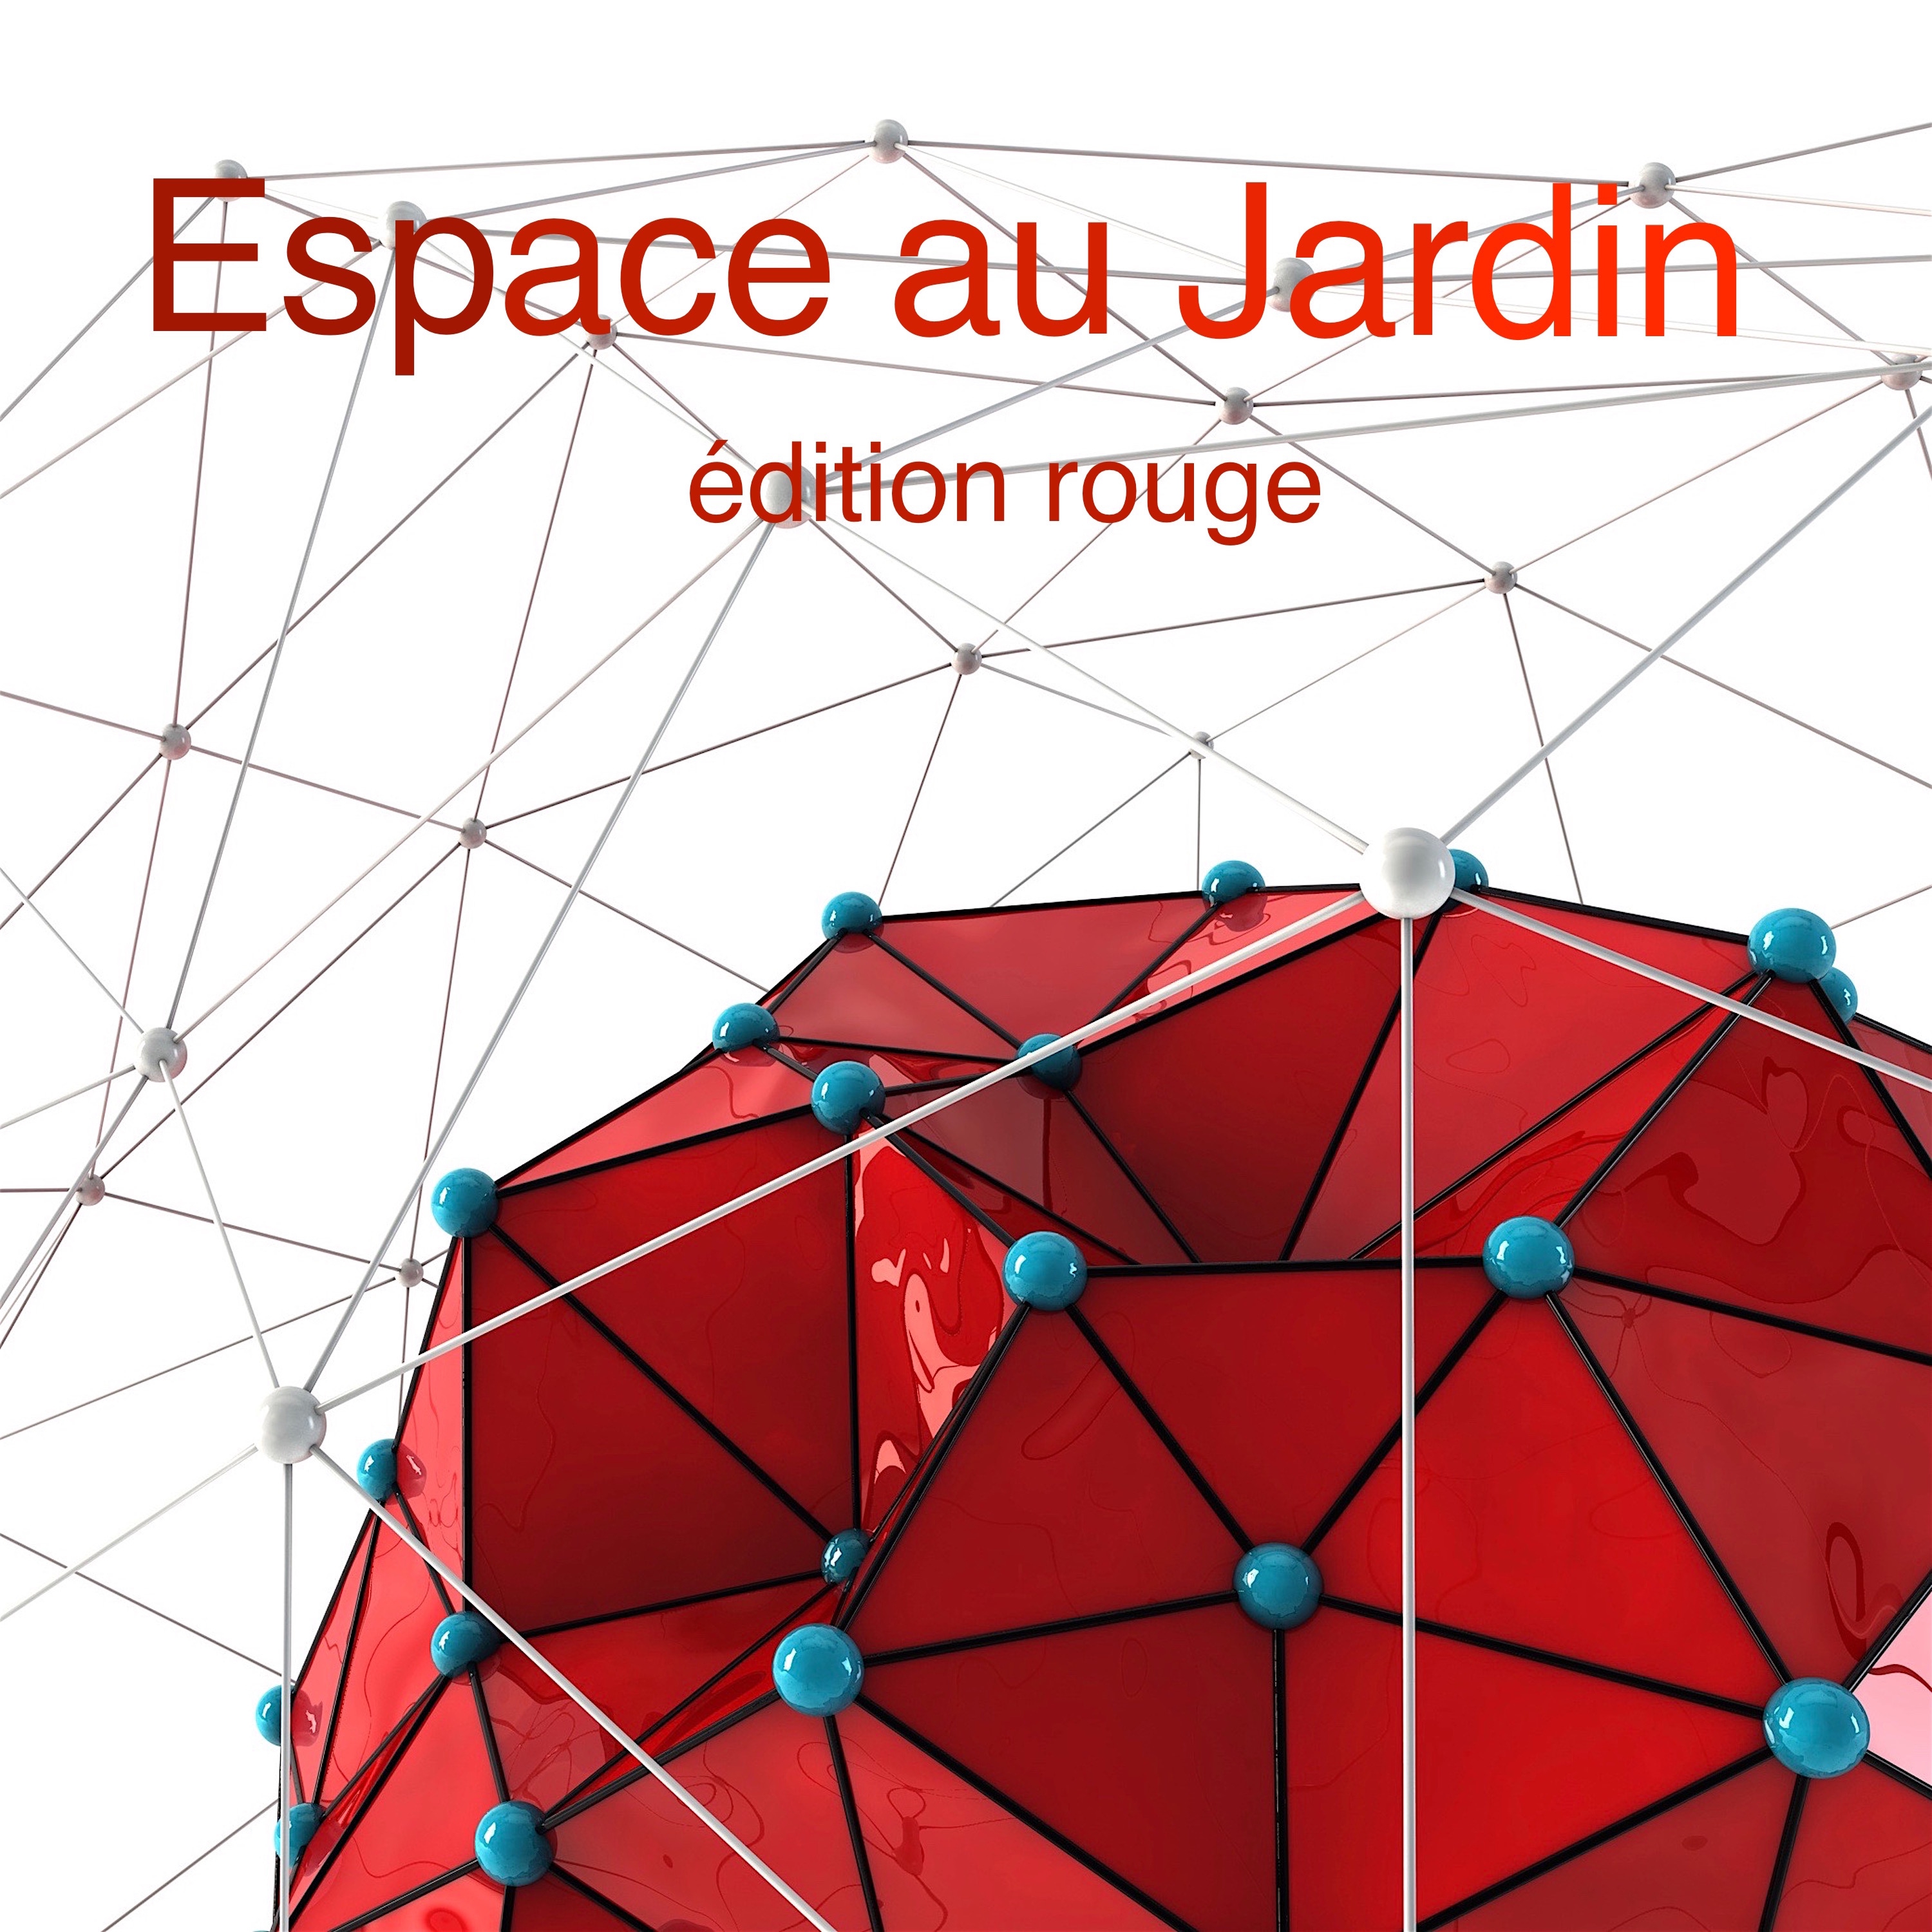 Espace au jardin e dition rouge by Kolibri Musique 1 Continuous DJ Mix